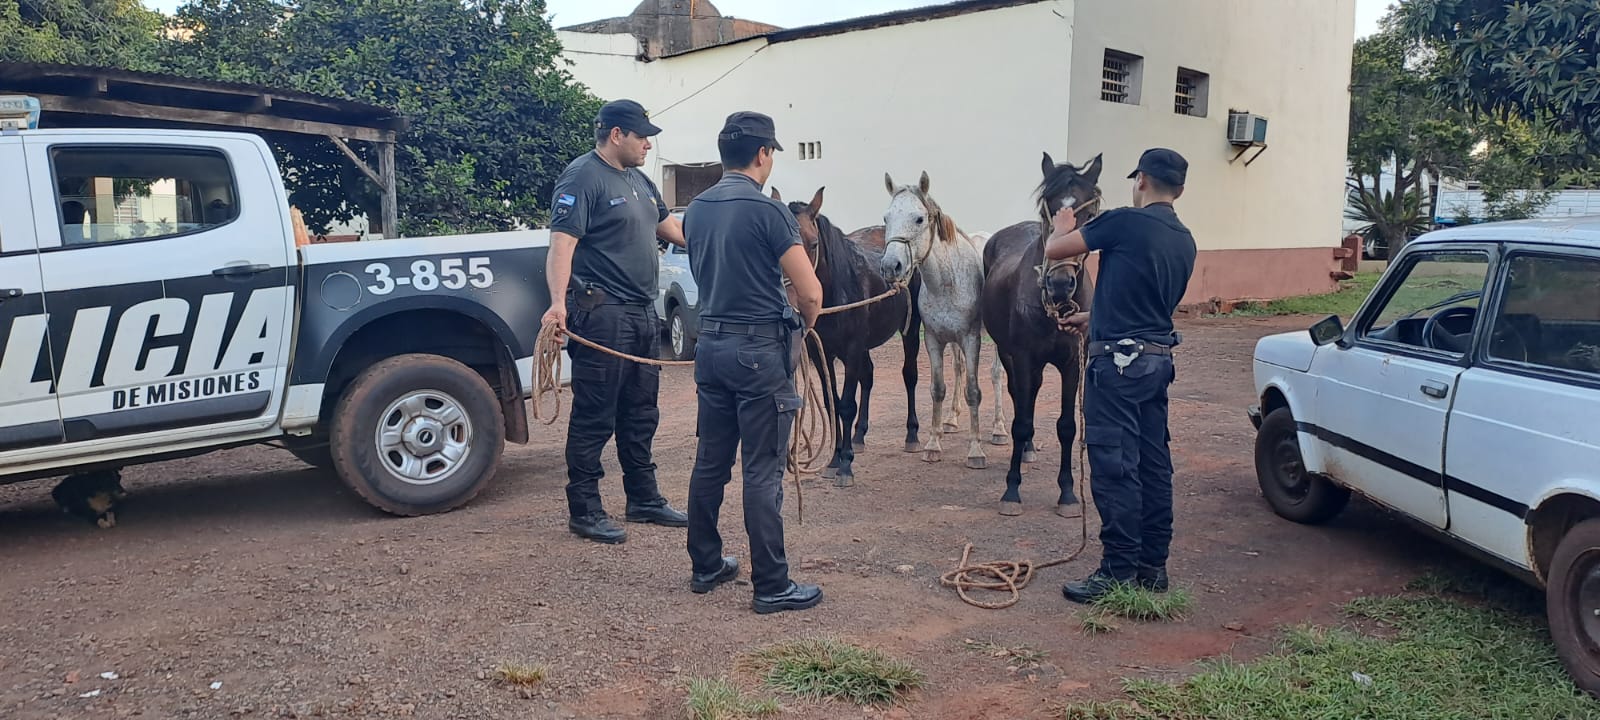 Vendieron por internet tres caballos robados y la Policía los recuperó imagen-2